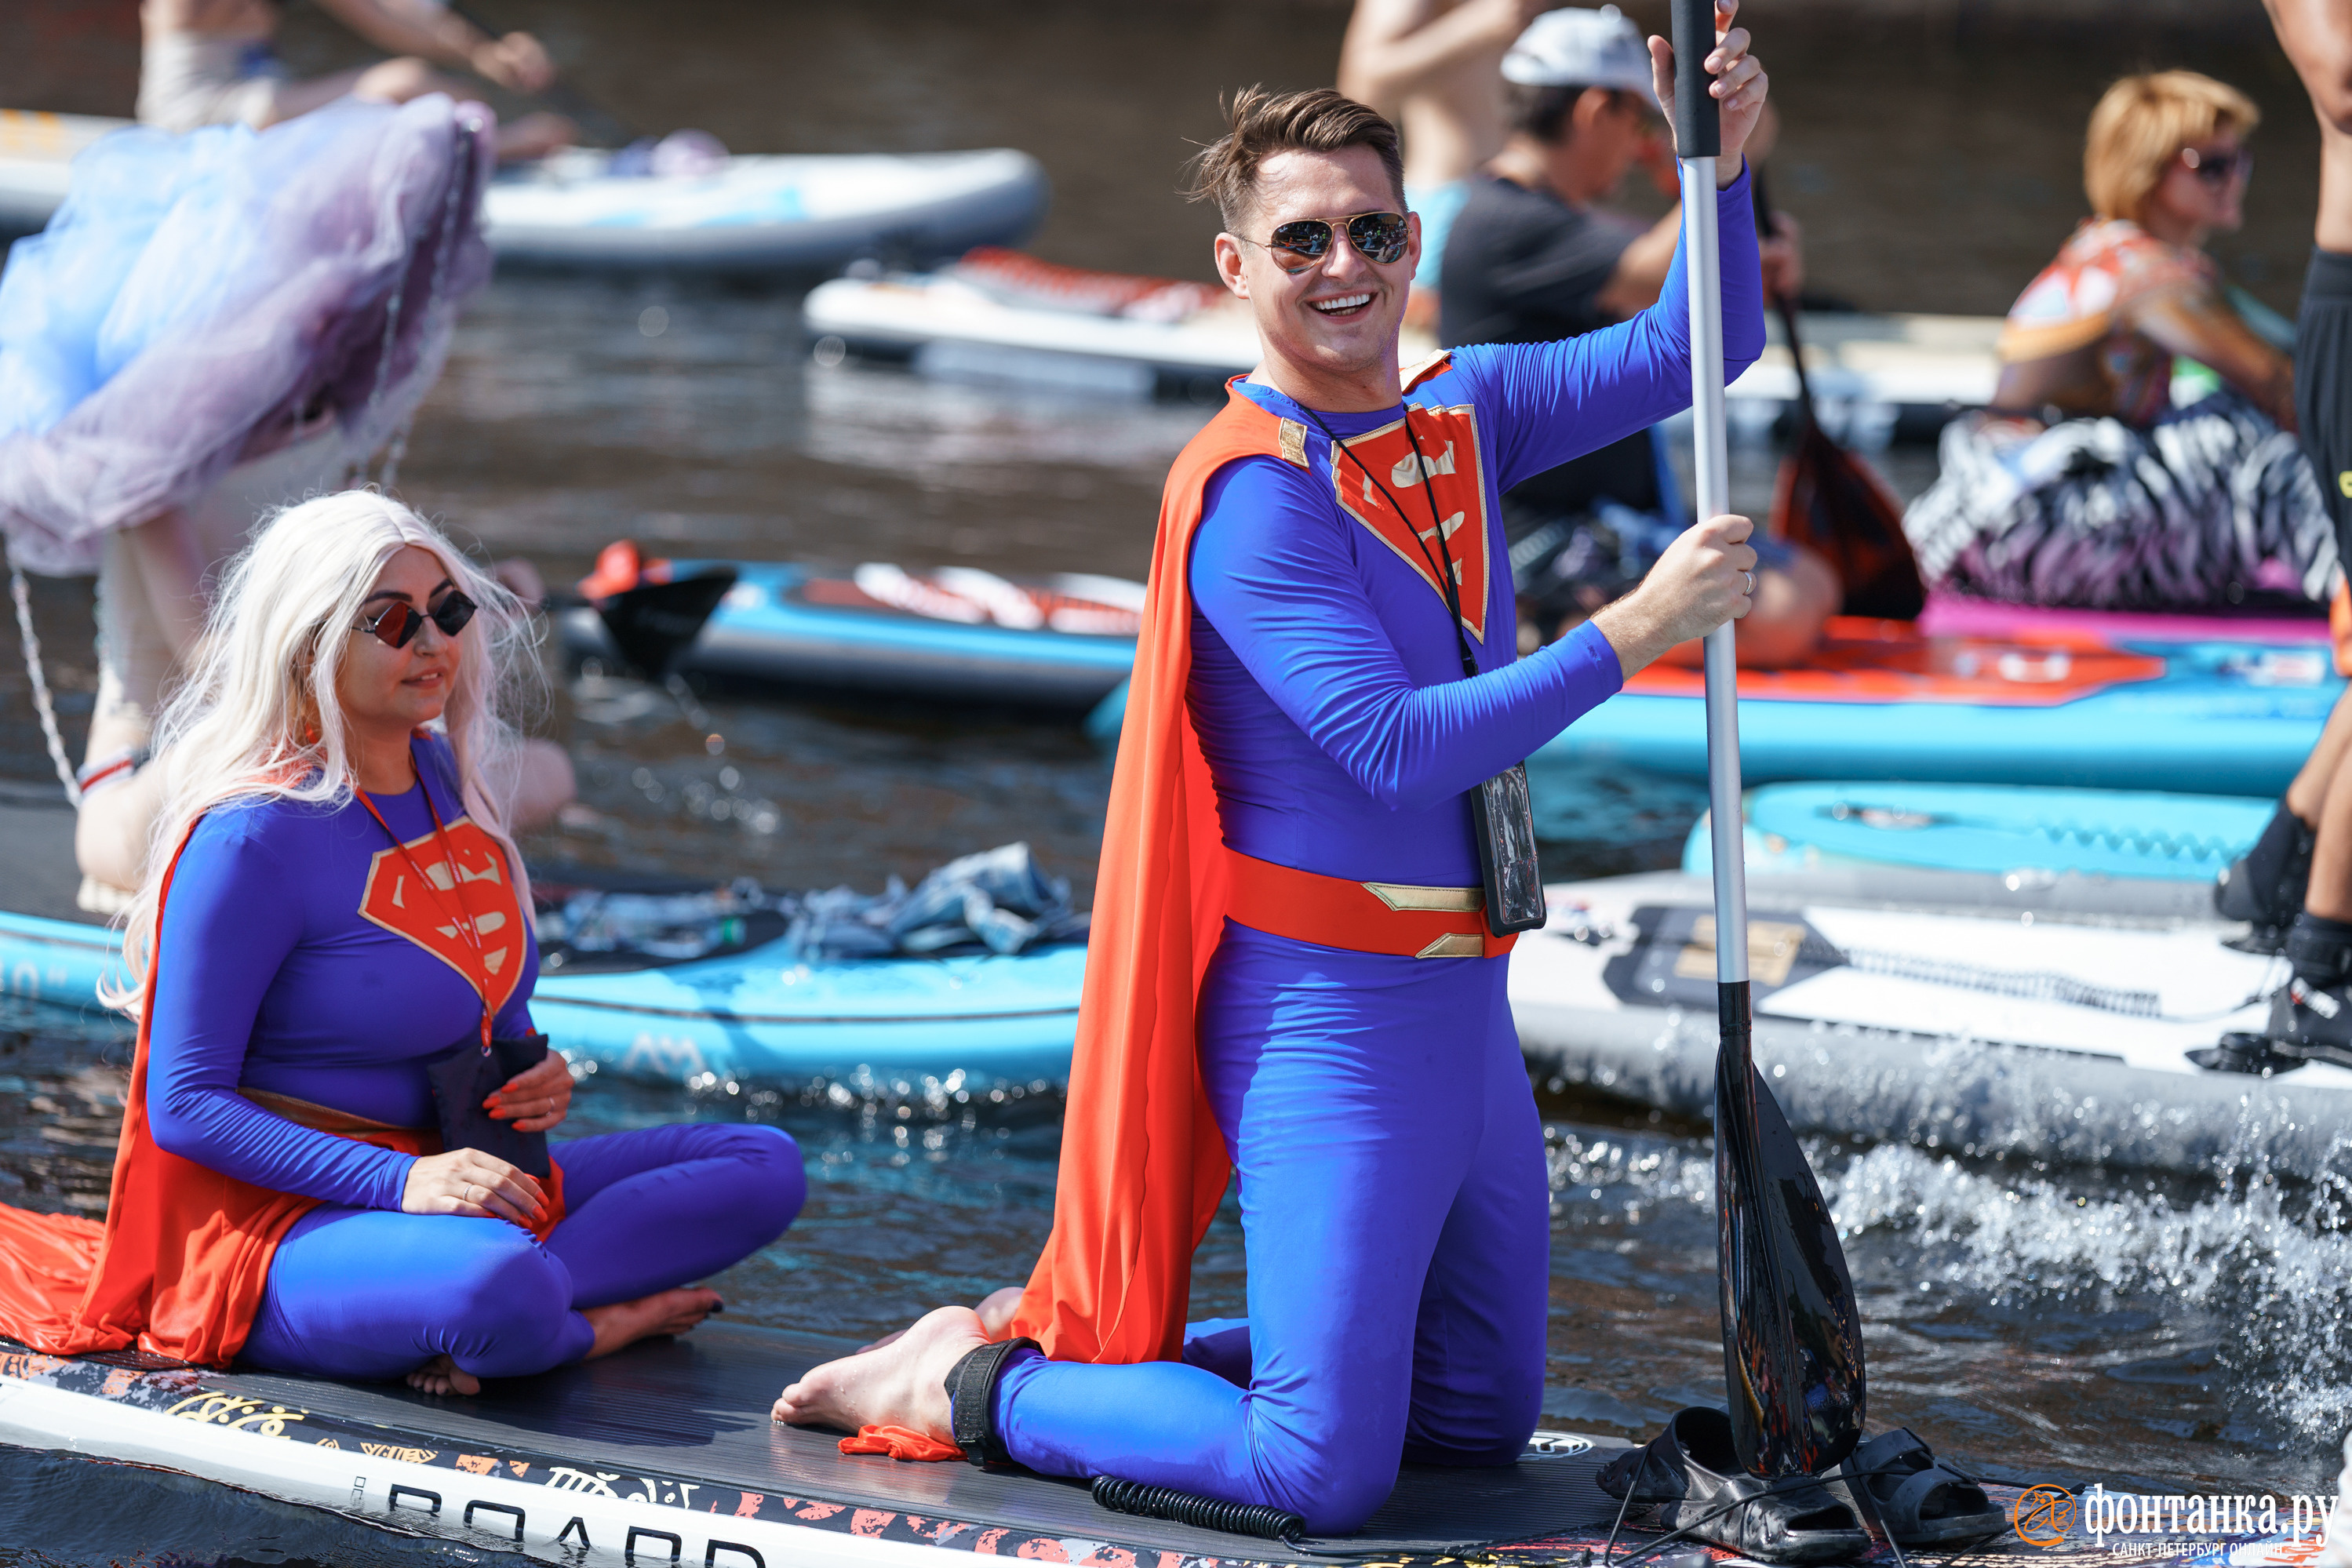 На сапах Супермены и красавицы в бикини: в Екатеринбурге устроят карнавал на воде